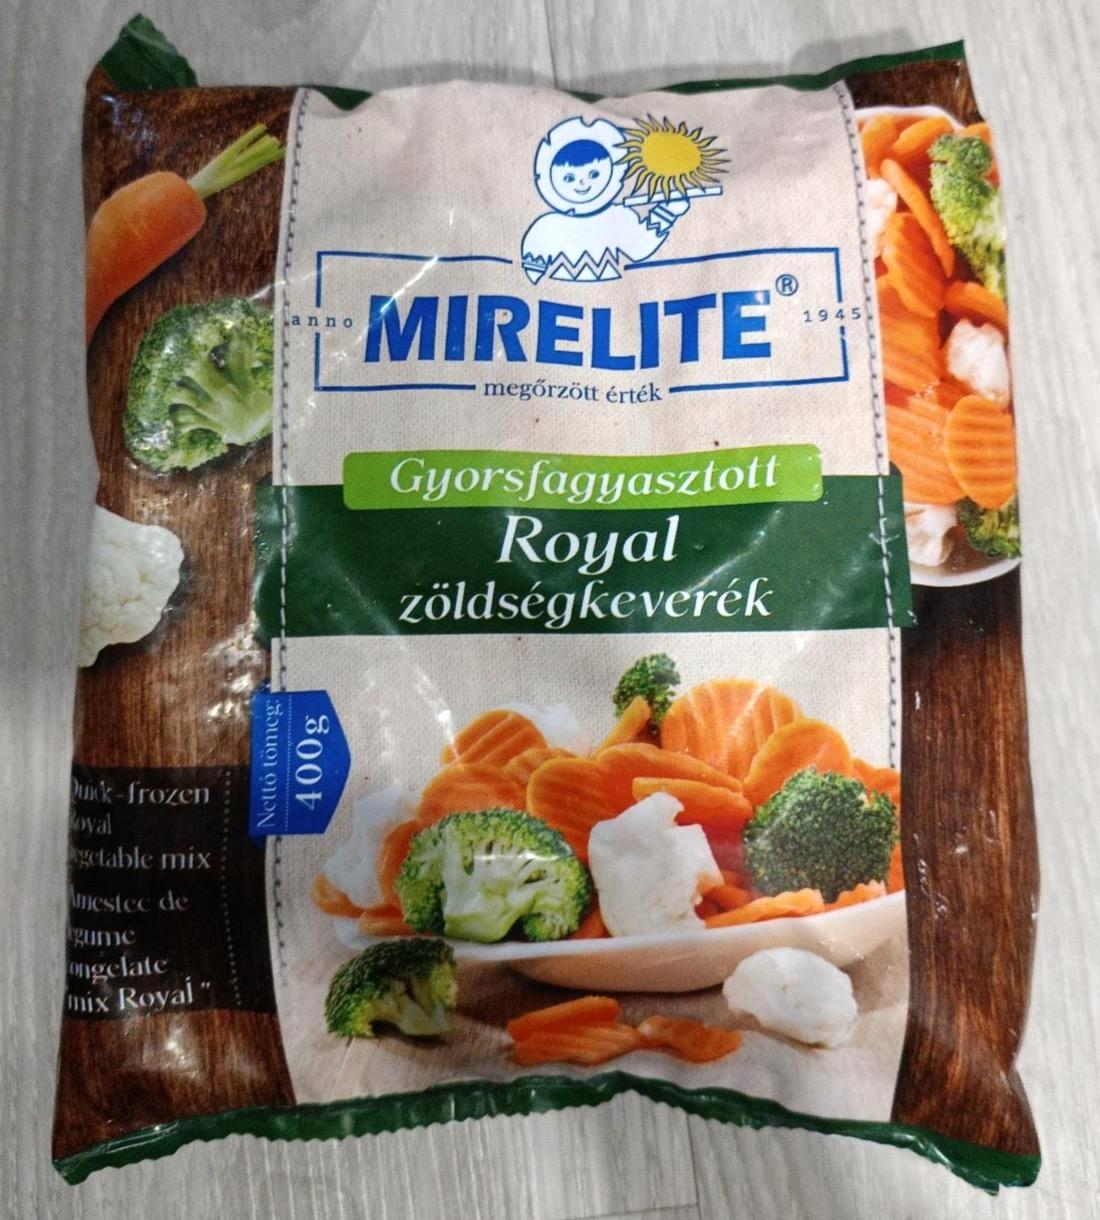 Képek - Royal zöldségkeverék Mirelite